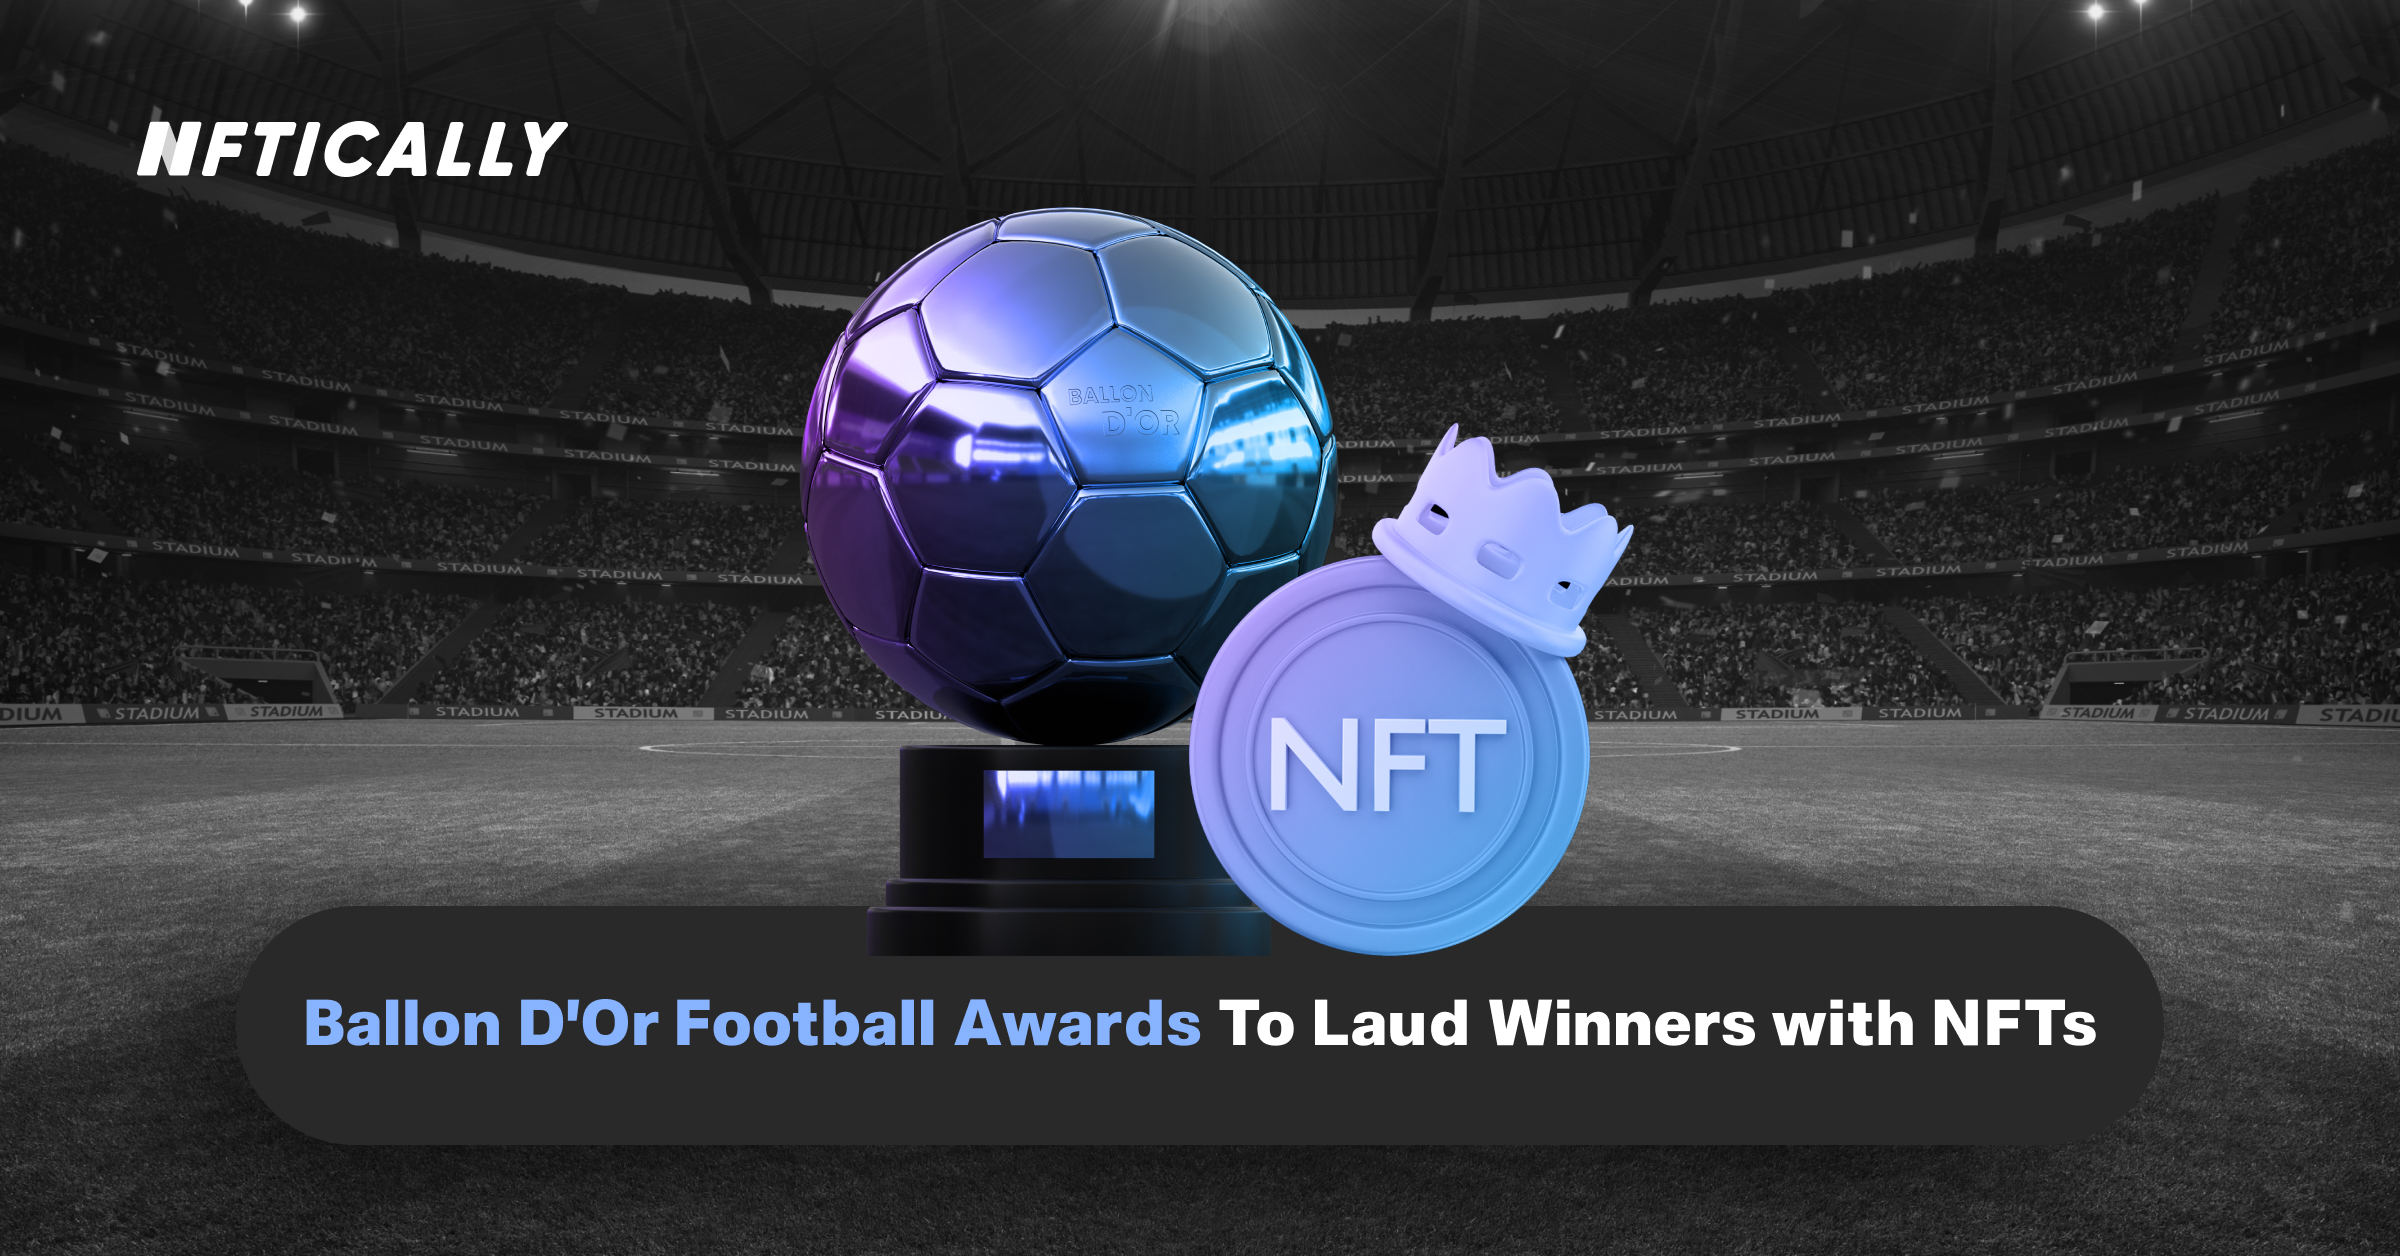 Golden Balls Football Awards pour féliciter les gagnants avec NFT.